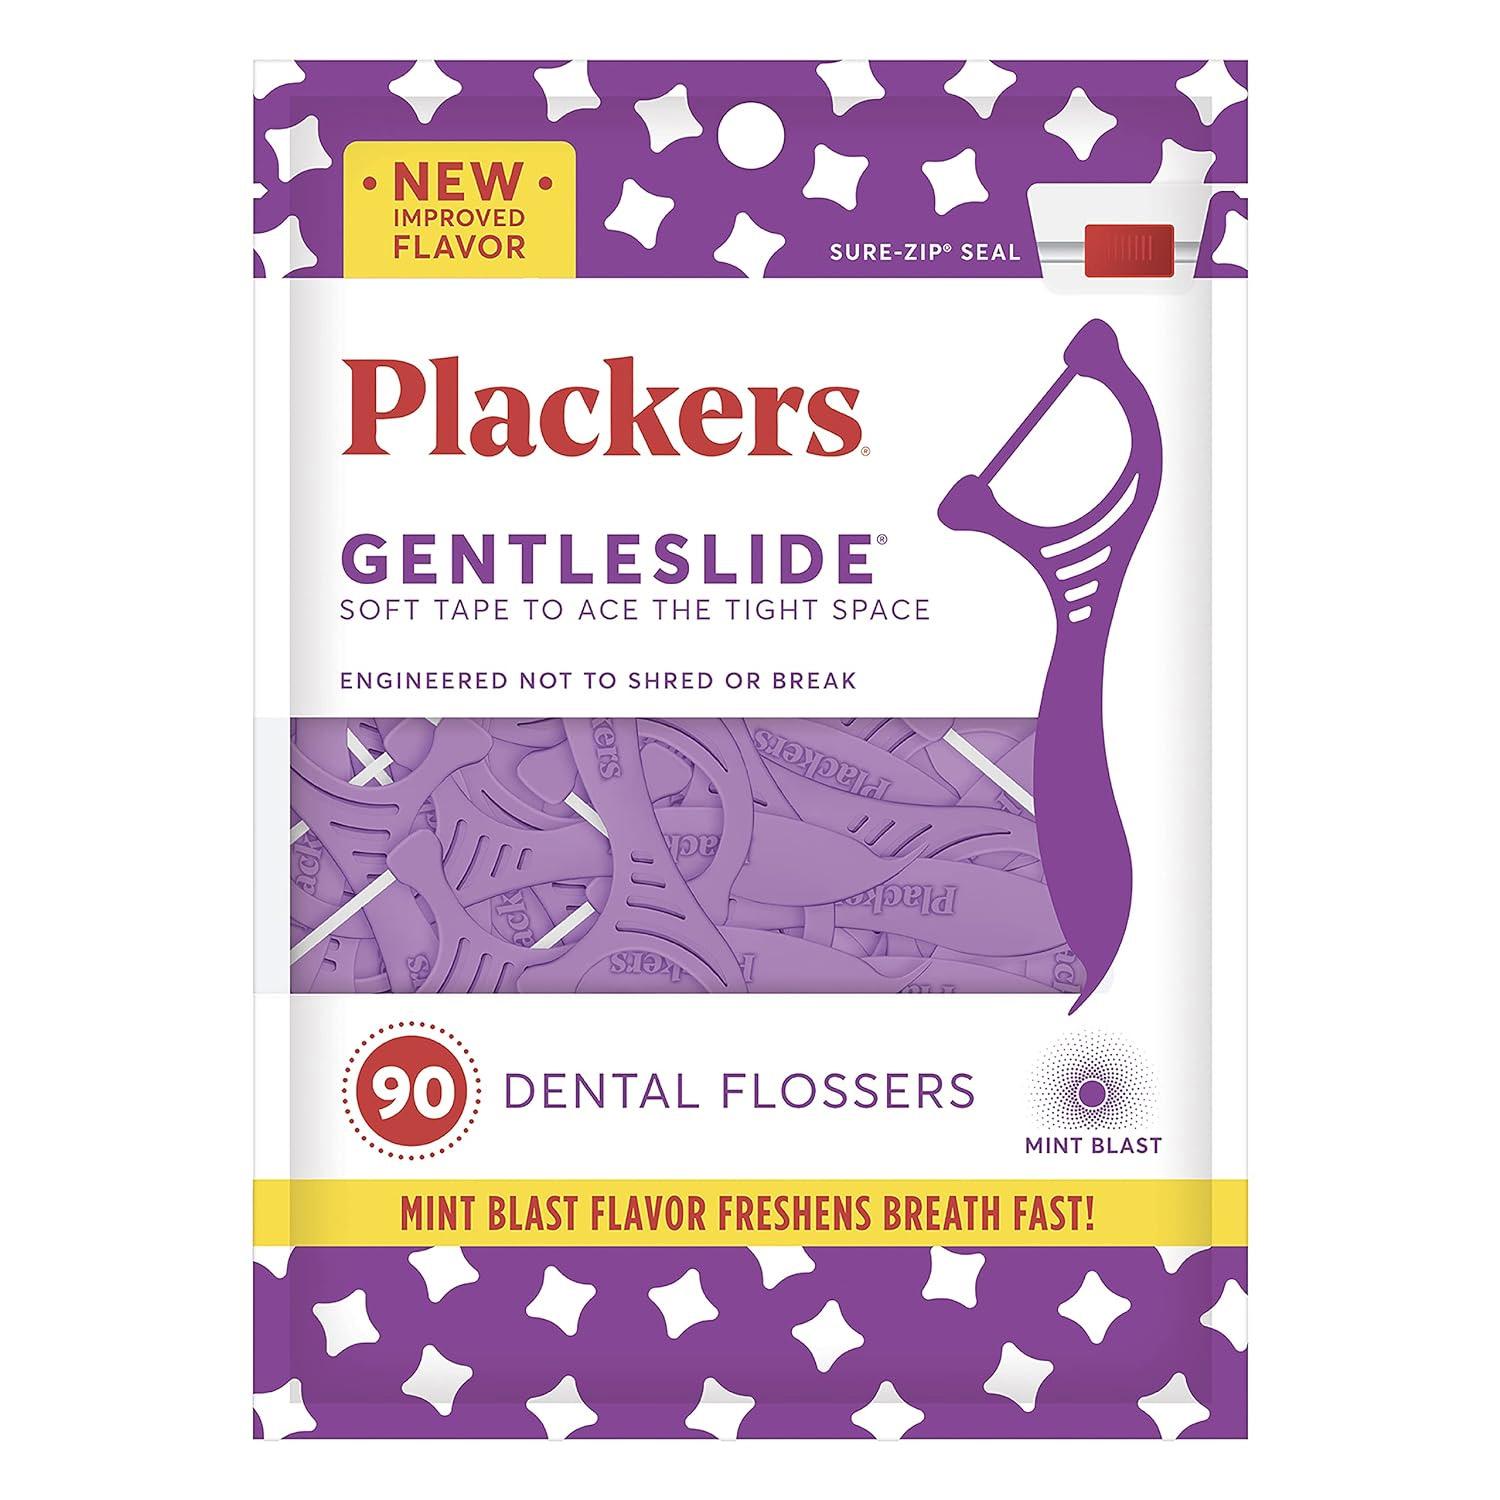 Plackers Gentleslide Dental Flossers 90 Pack for $1.62